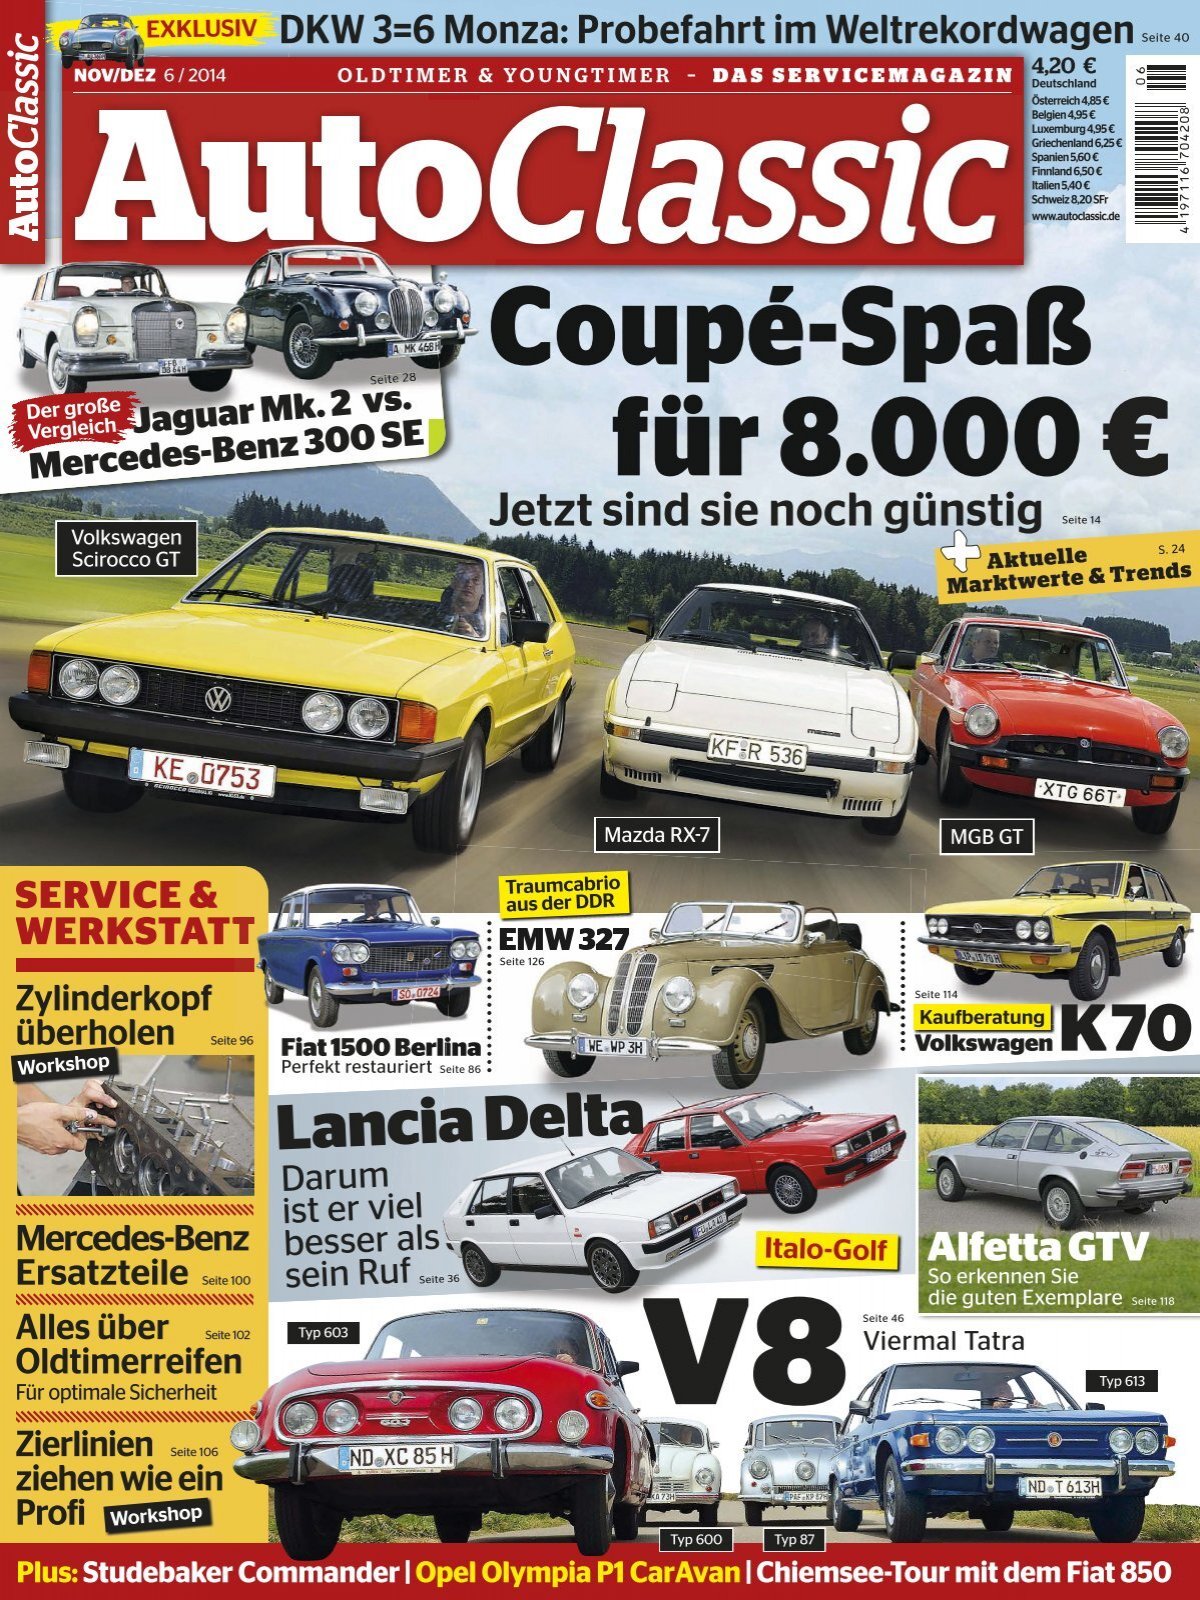 AUTO CLASSIC Coupé-Spaß für 8.000 € (Vorschau)